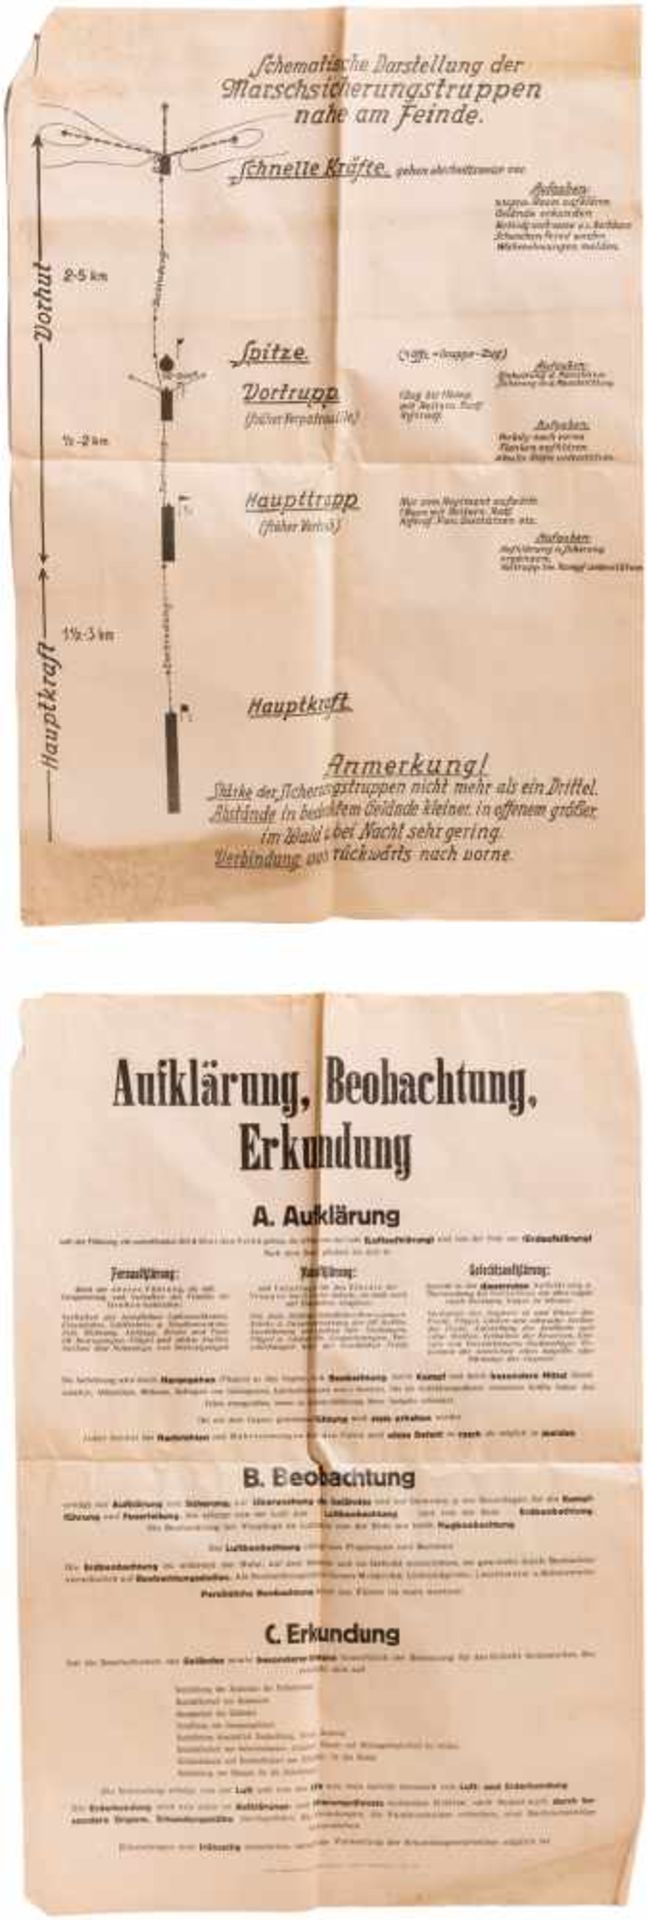 Three posters of the Landeswehramt of the Wiener Heimatschutzverein (Viennese Society for Homeland